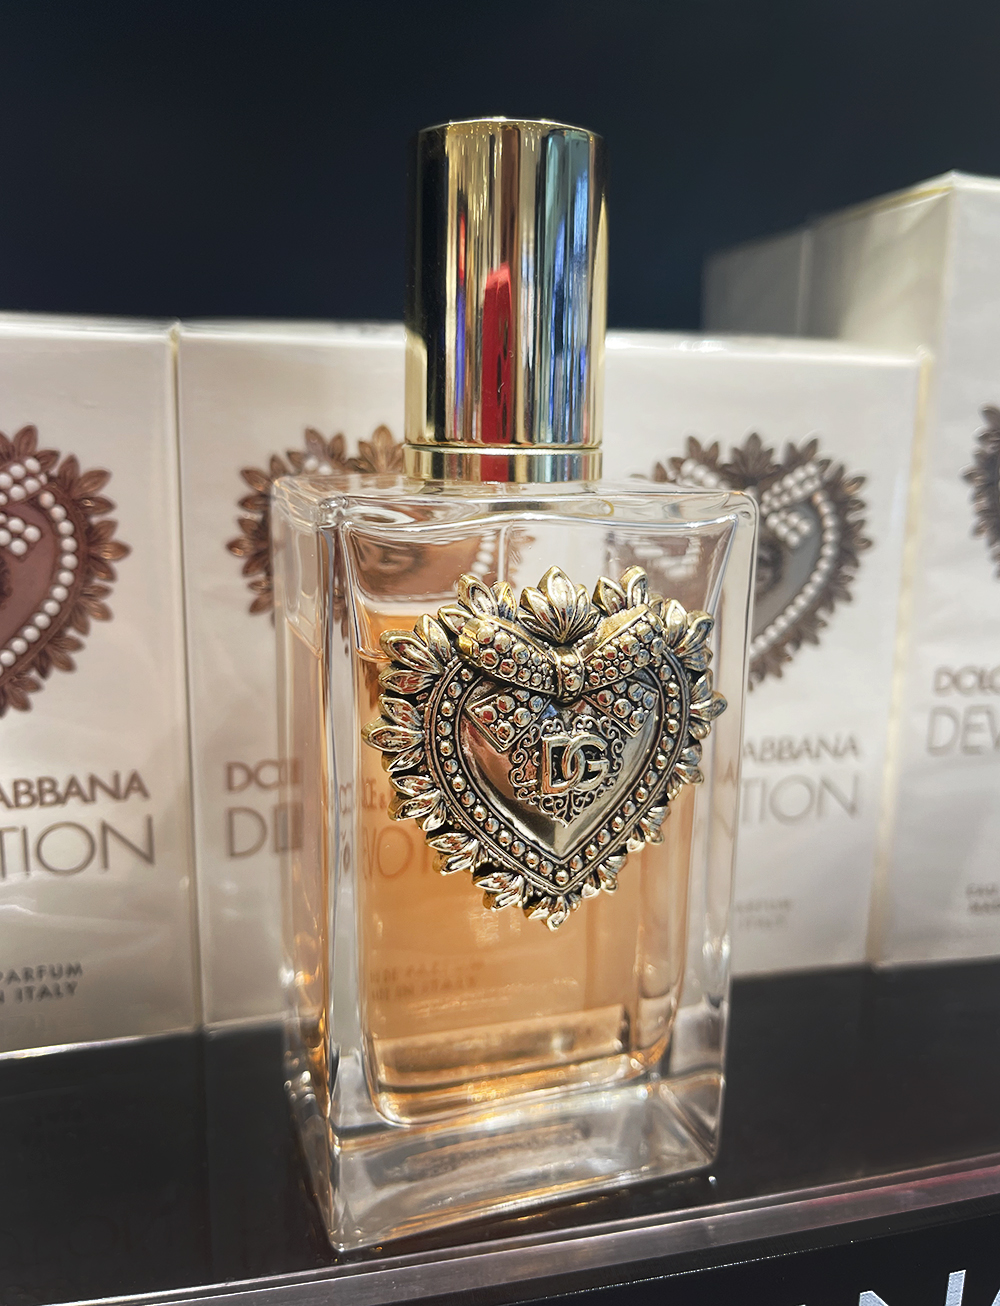 Dolce & Gabbana Devotion Eau de Parfum ~ Reviews